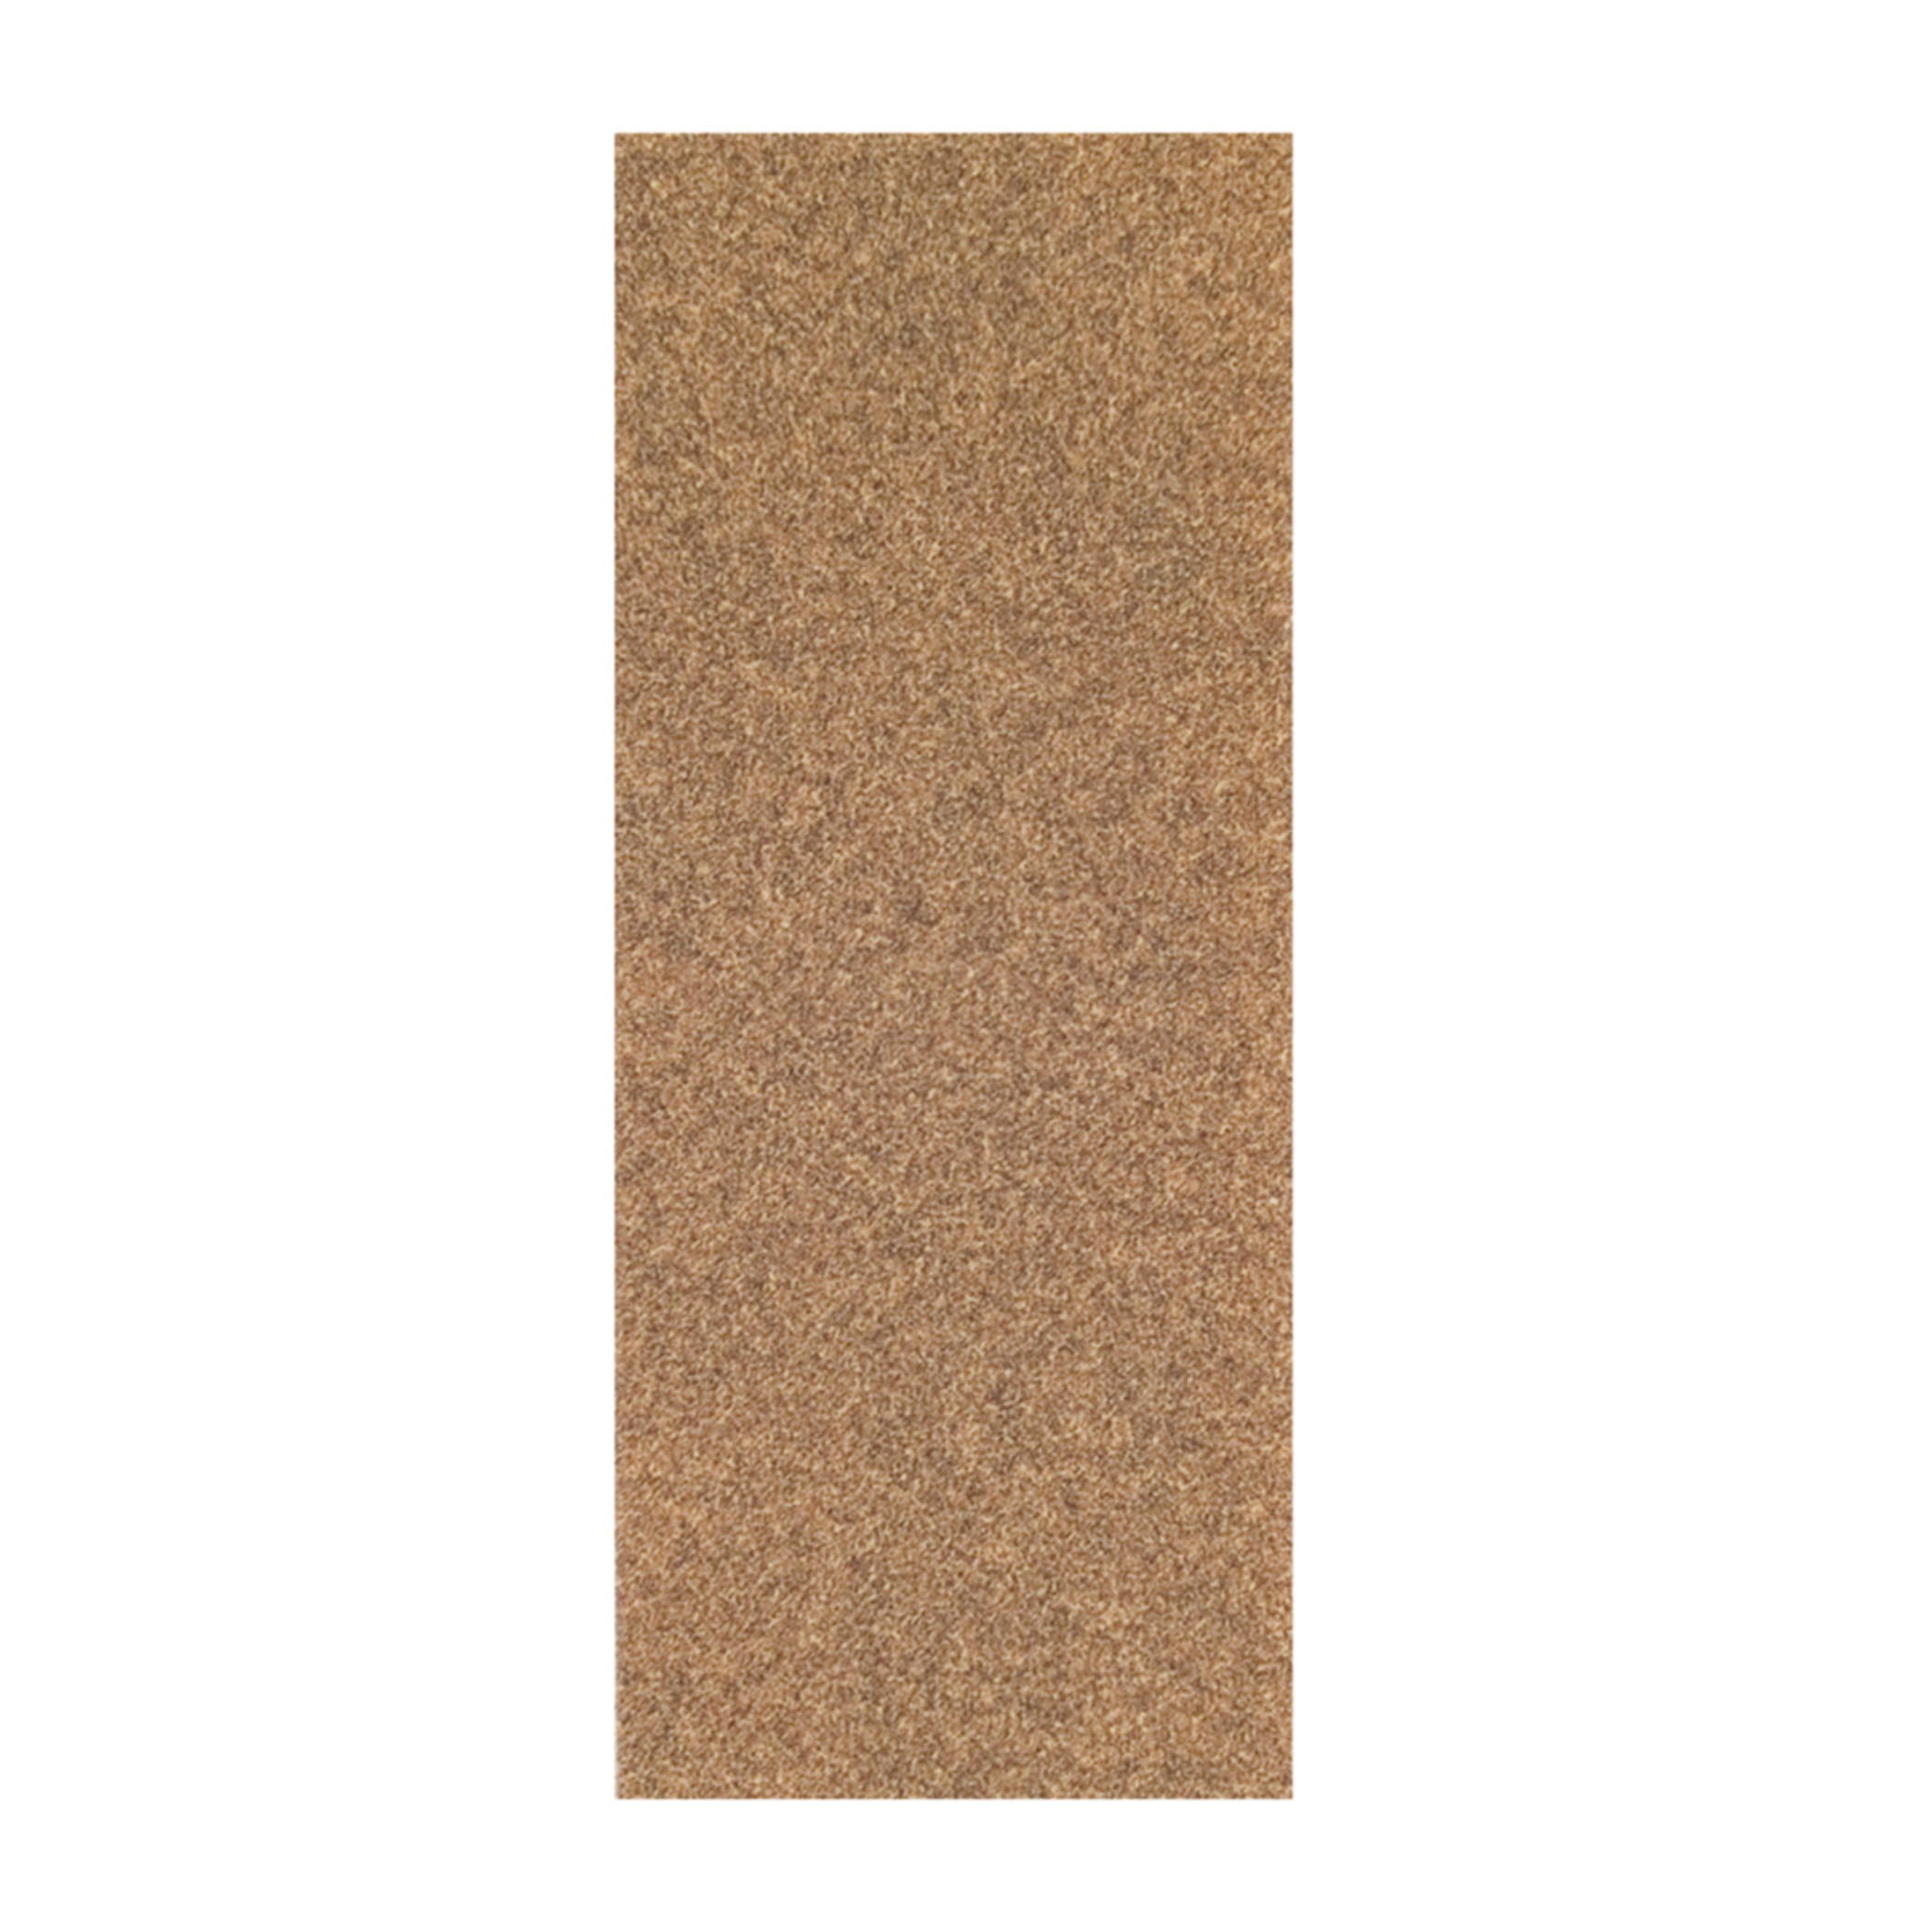 Norton® Adalox® 66261102925 A213 Coated Sandpaper Cut Sheet, 9 in L x 3-2/3 in W, P60 Grit, Coarse Grade, Aluminum Oxide Abrasive, Paper Backing